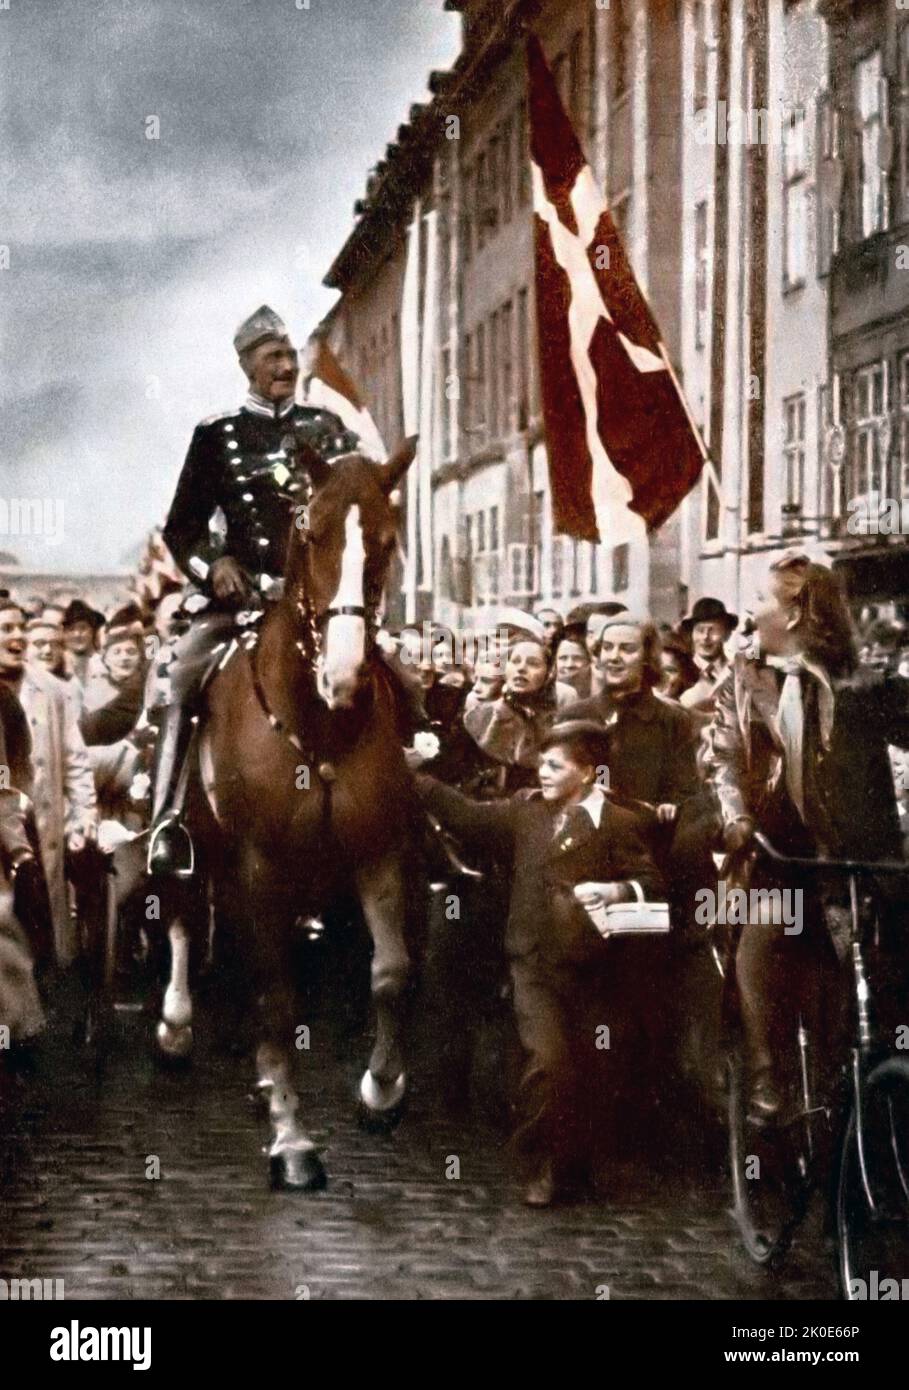 König Christian X. von Dänemark, der an seinem 70.. Geburtstag 1940 durch Kopenhagen reitet. Das Bild wurde während der deutschen Besetzung Dänemarks im Zweiten Weltkrieg aufgenommen Stockfoto